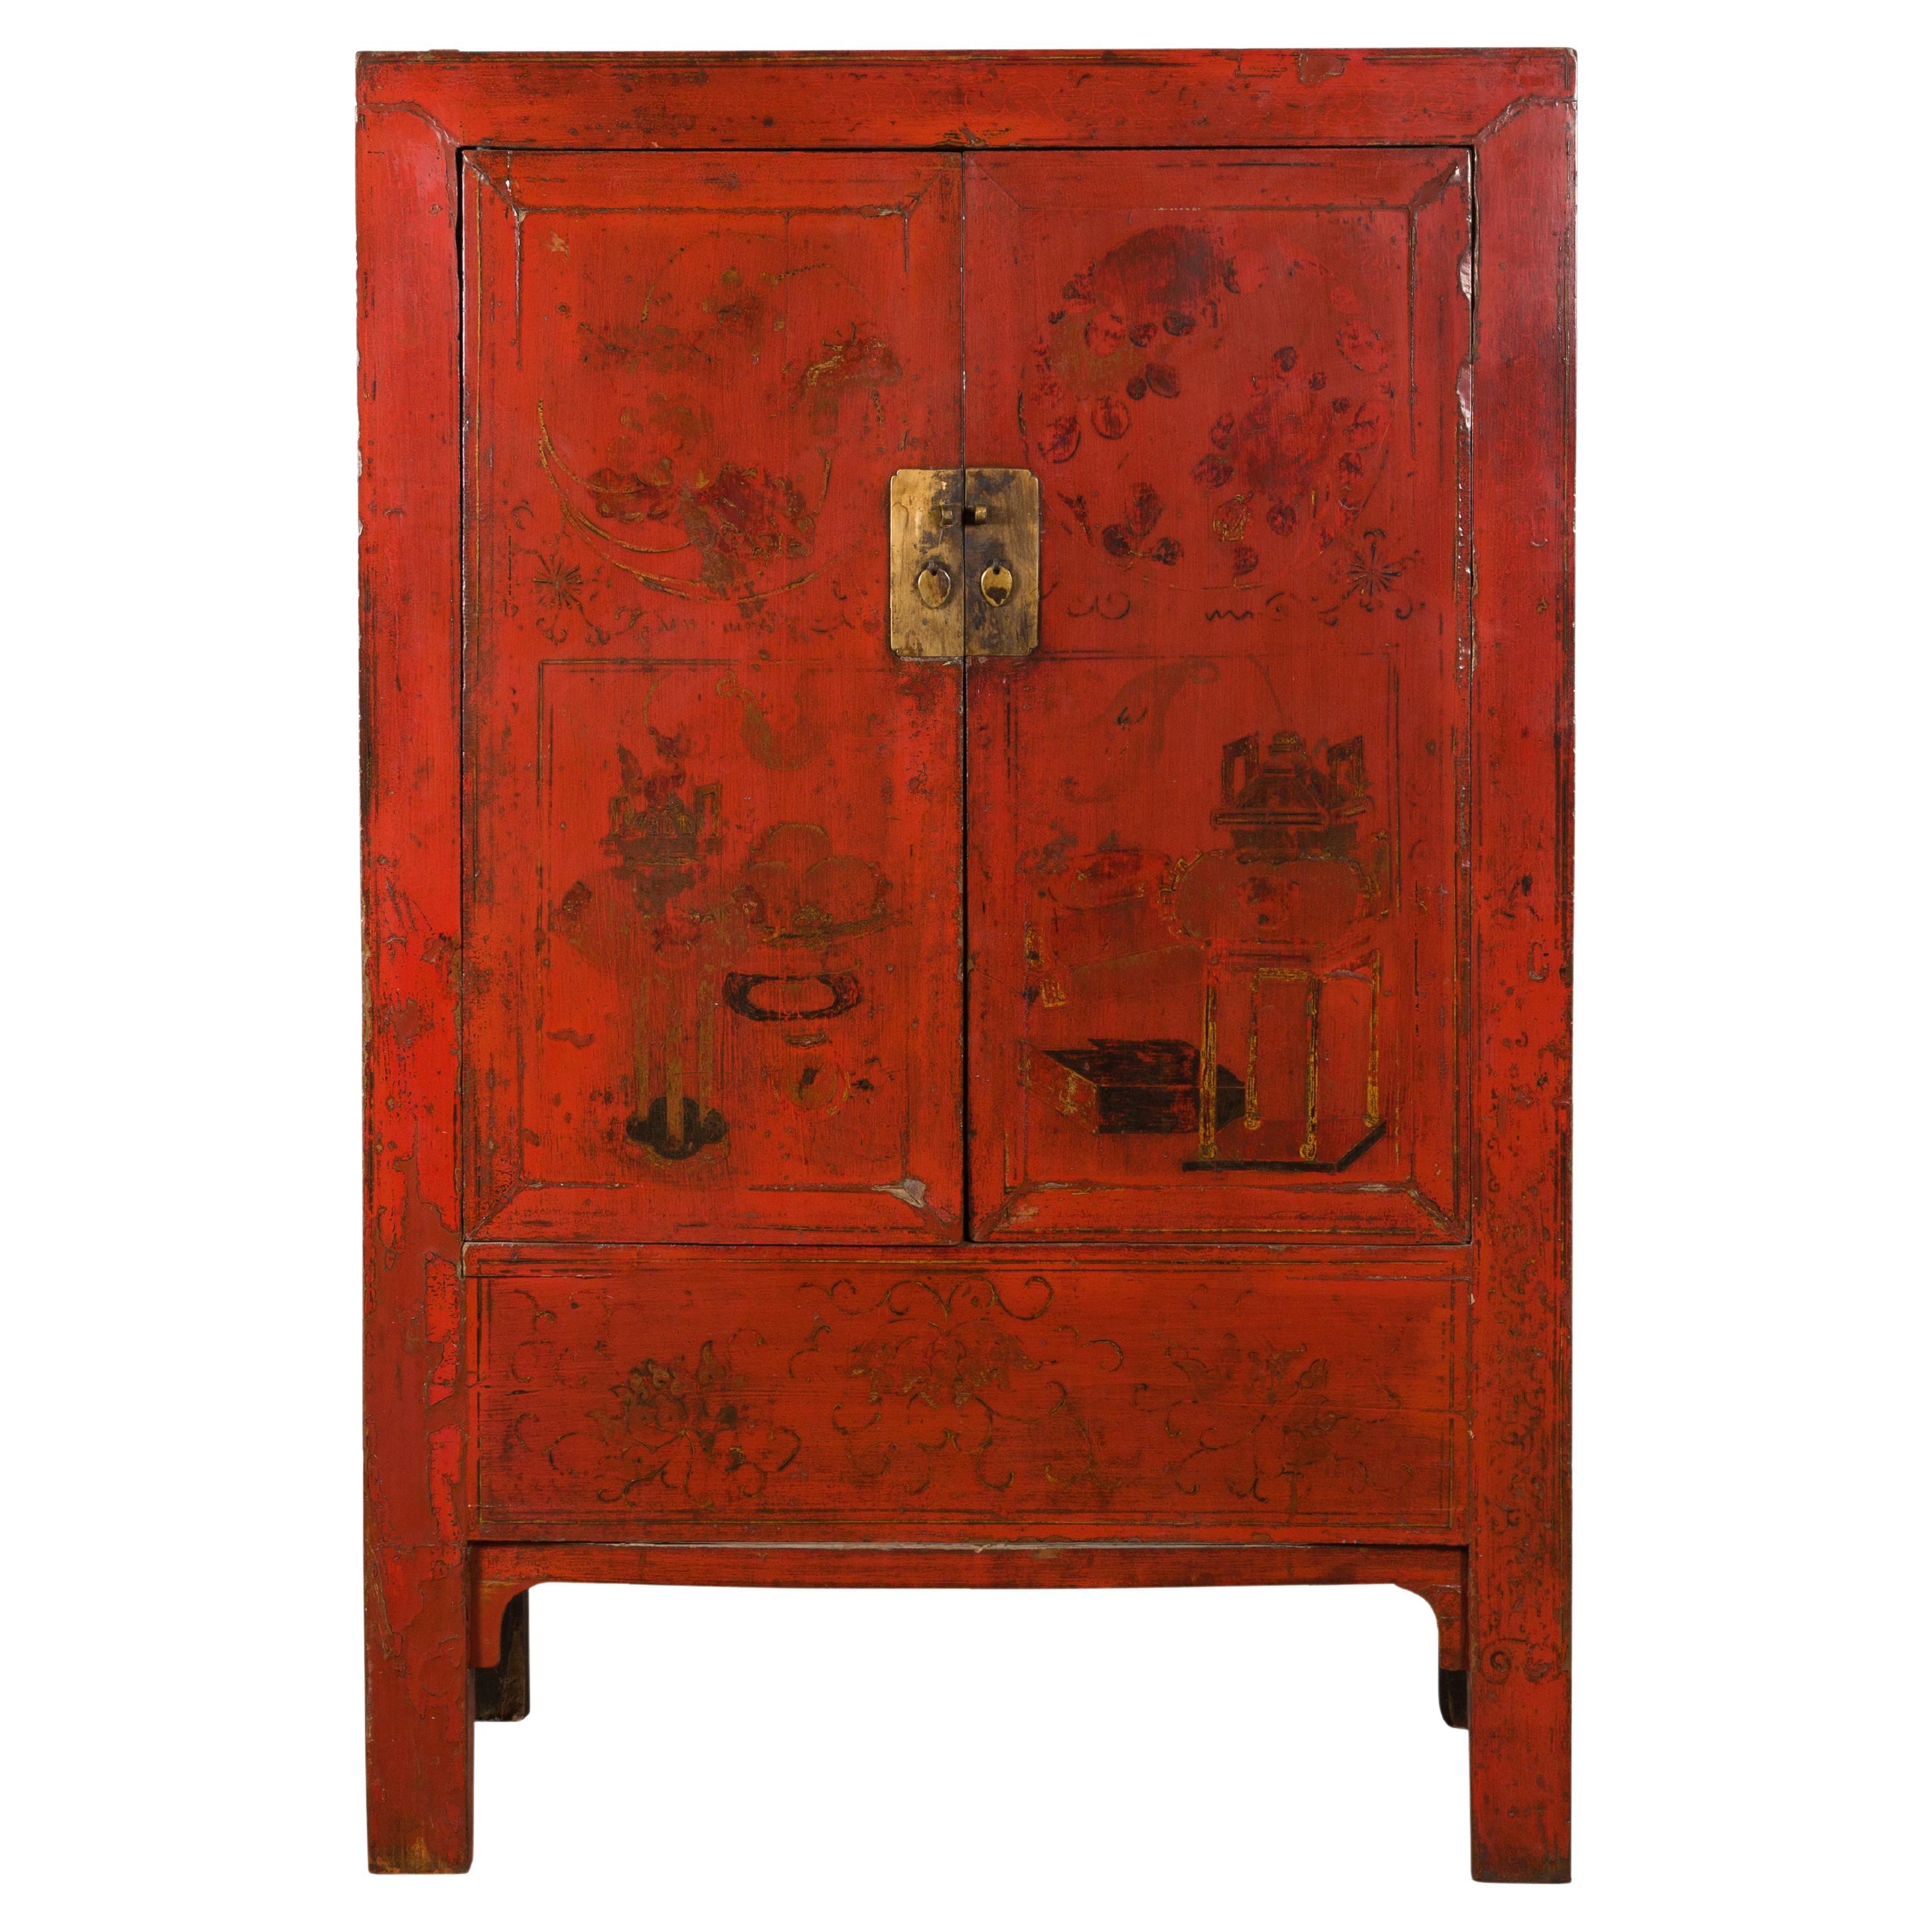 Cabinet de mariage Shanxi de la dynastie Qing avec laque rouge d'origine